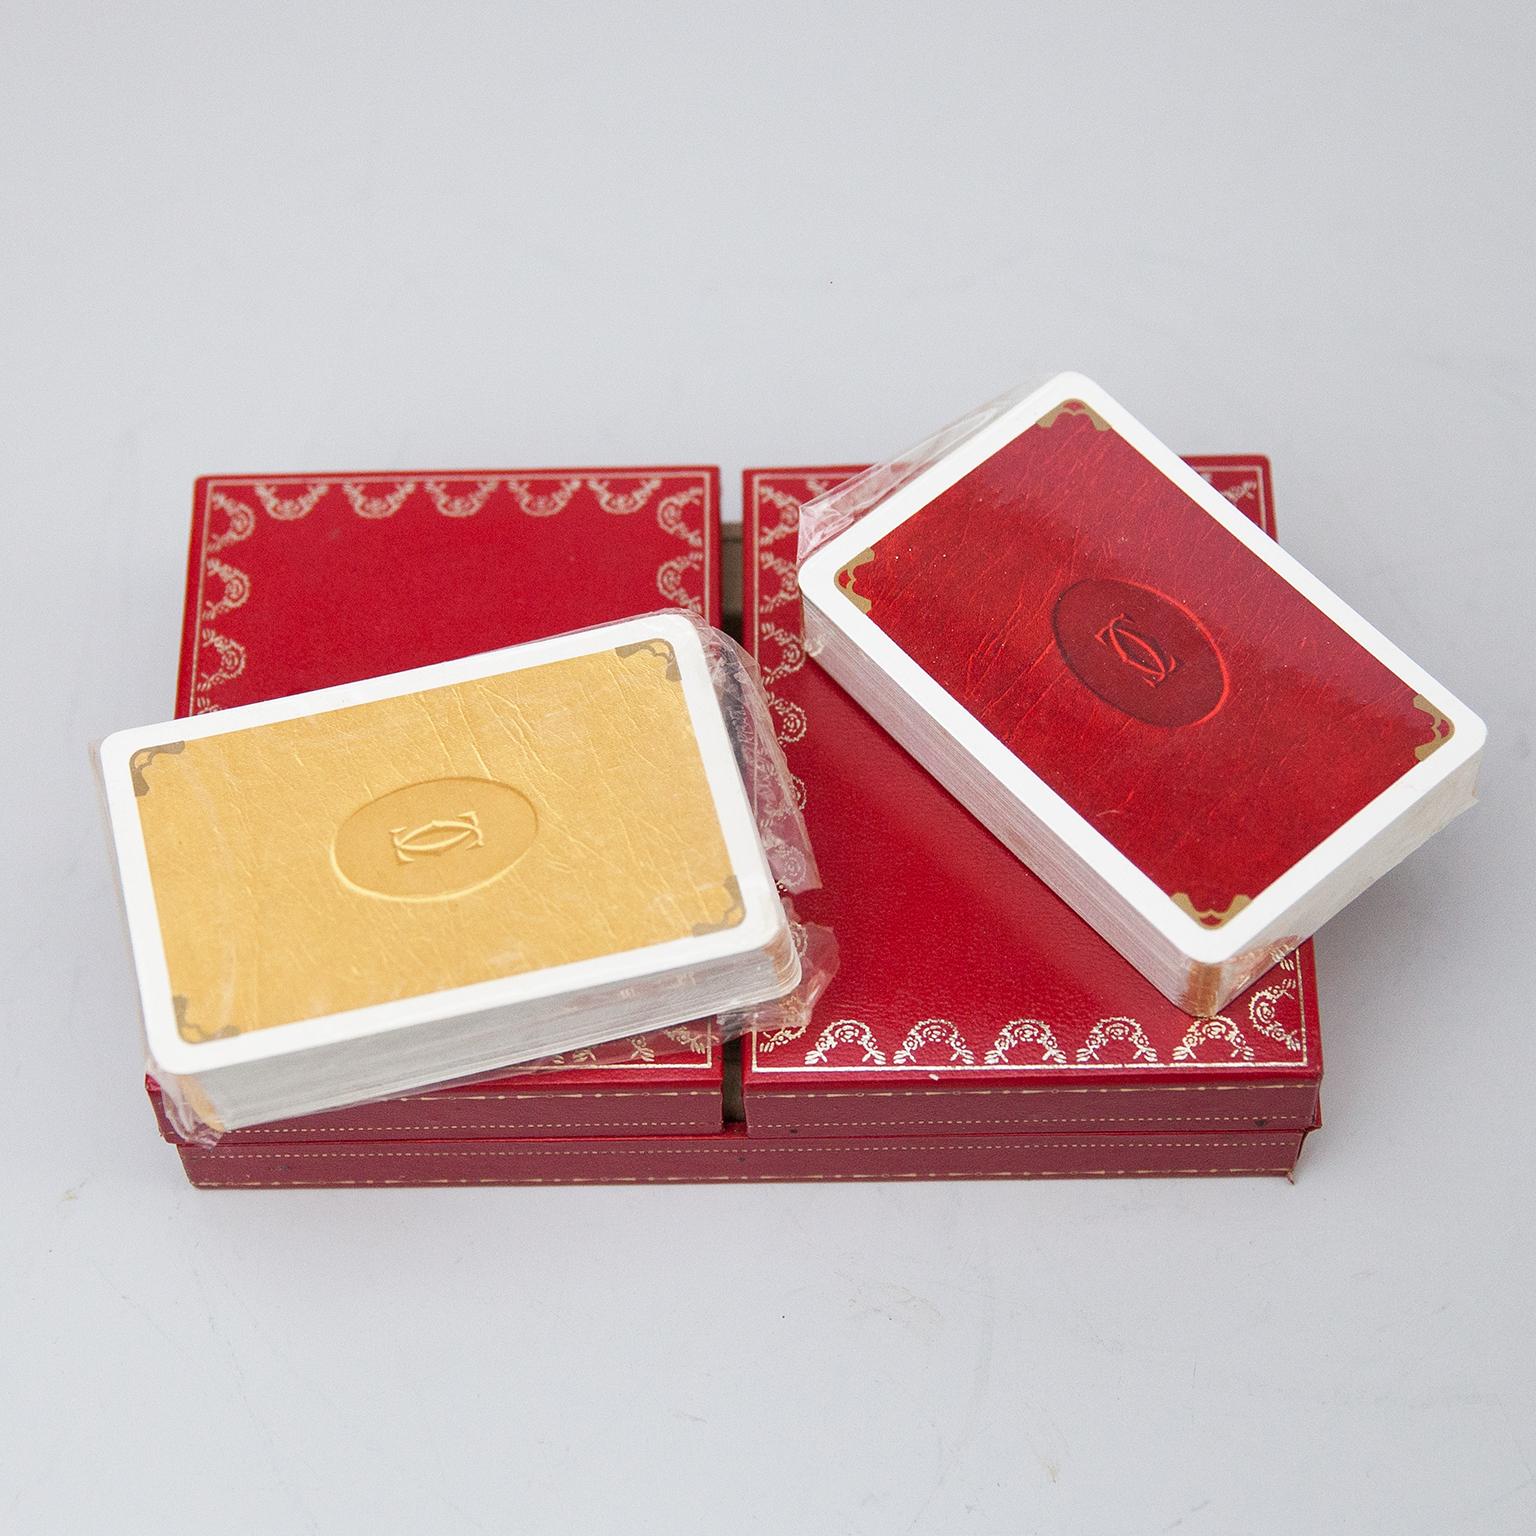 Unbenutzte Cartier Spielkartenbox, ein Deck plus Joker, Poker, Bridge Spielkarten in Cartier rotem 2-türigem Etui. Les Must de Cartier Spielkarten wurden nur von 1972-1976 verkauft. Die mit Seide gefütterte Kartenschachtel mit 18-karätig vergoldeten